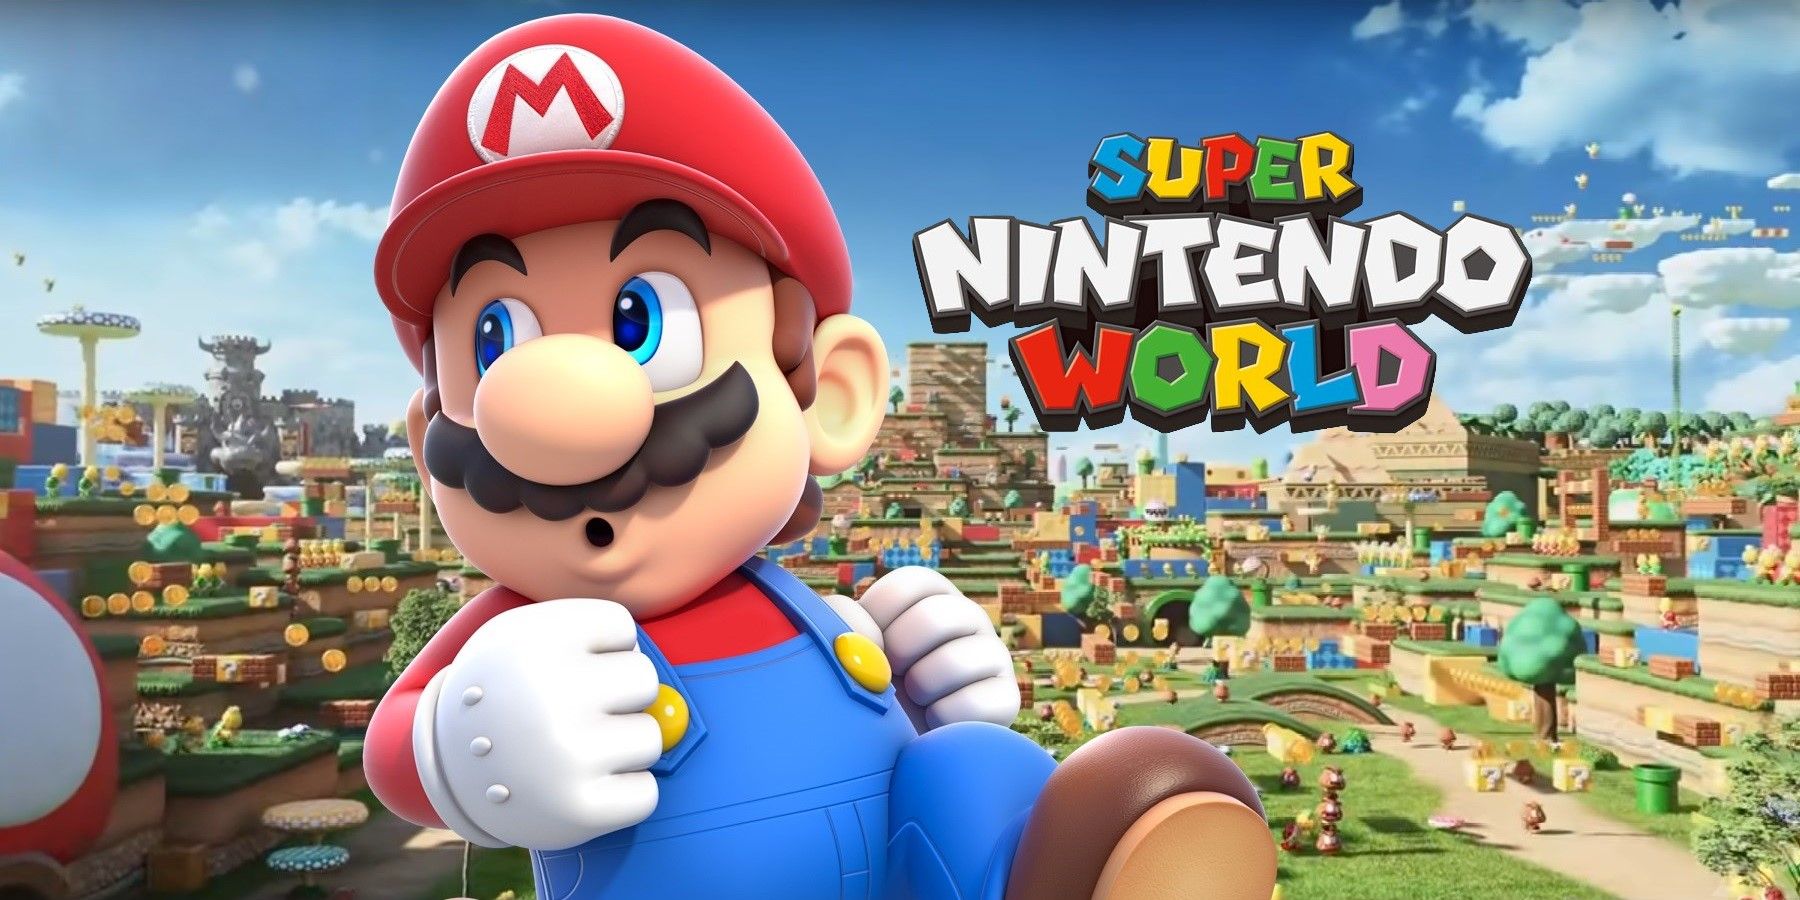 Super Nintendo World's opening has been delayed